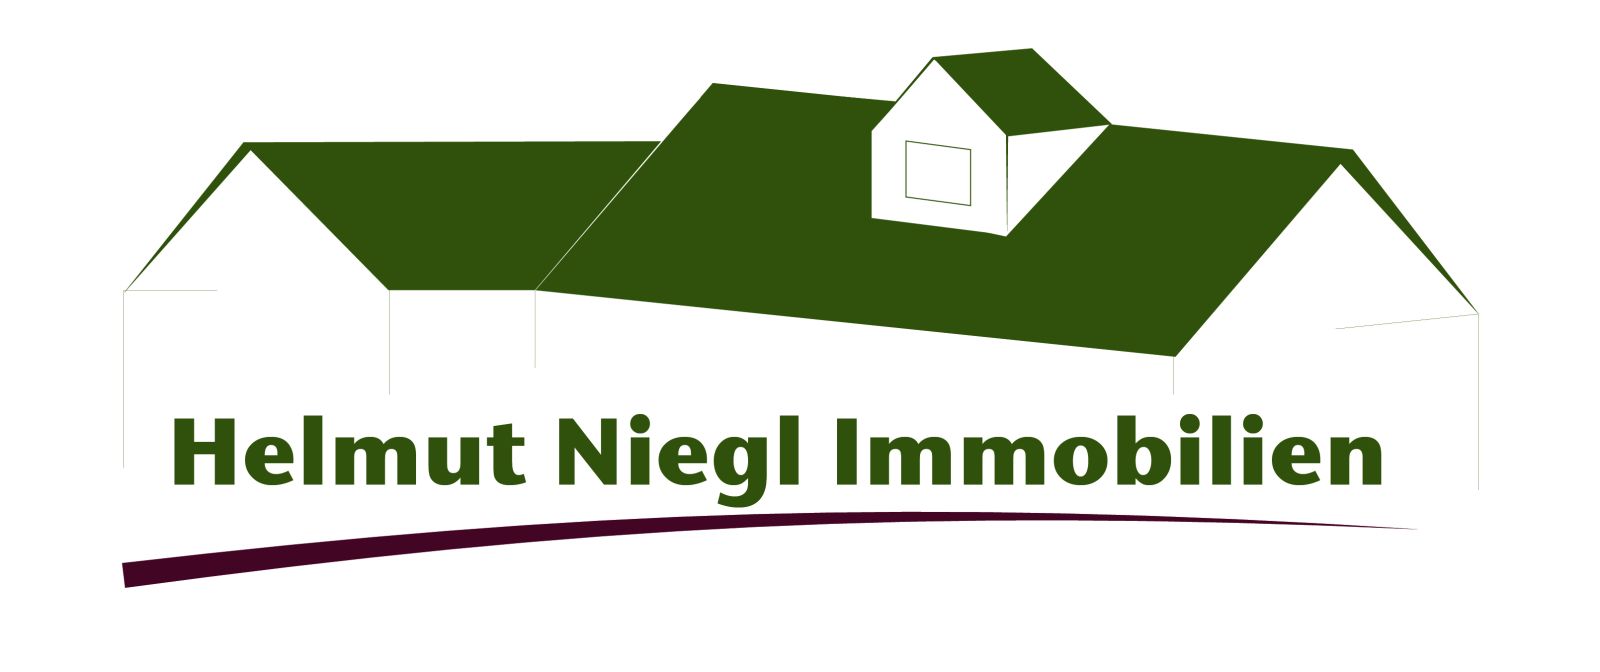 Helmut Niegl Immobilien - Ihr Immobilienmakler in Brandenburg im Landkreis Elbe-Elster